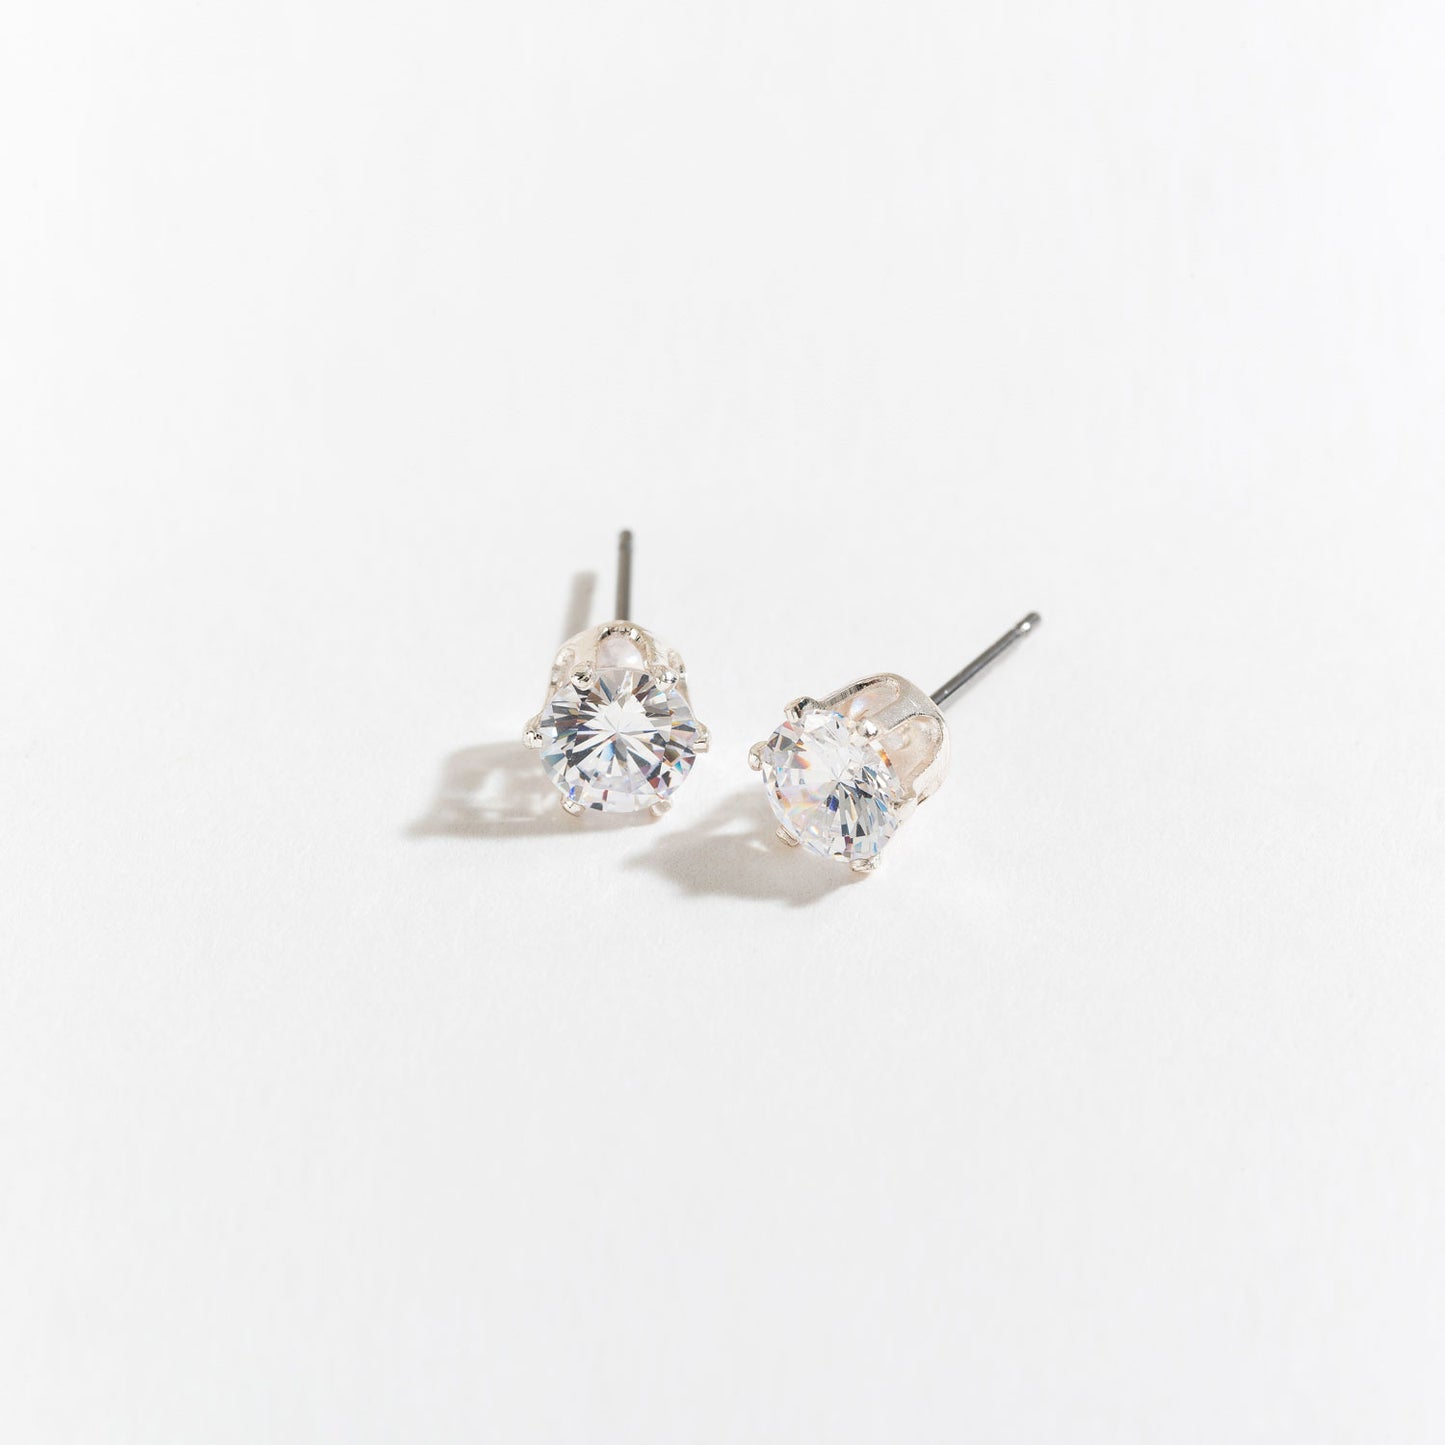 Cubic Zirconia Silver Stud Earring